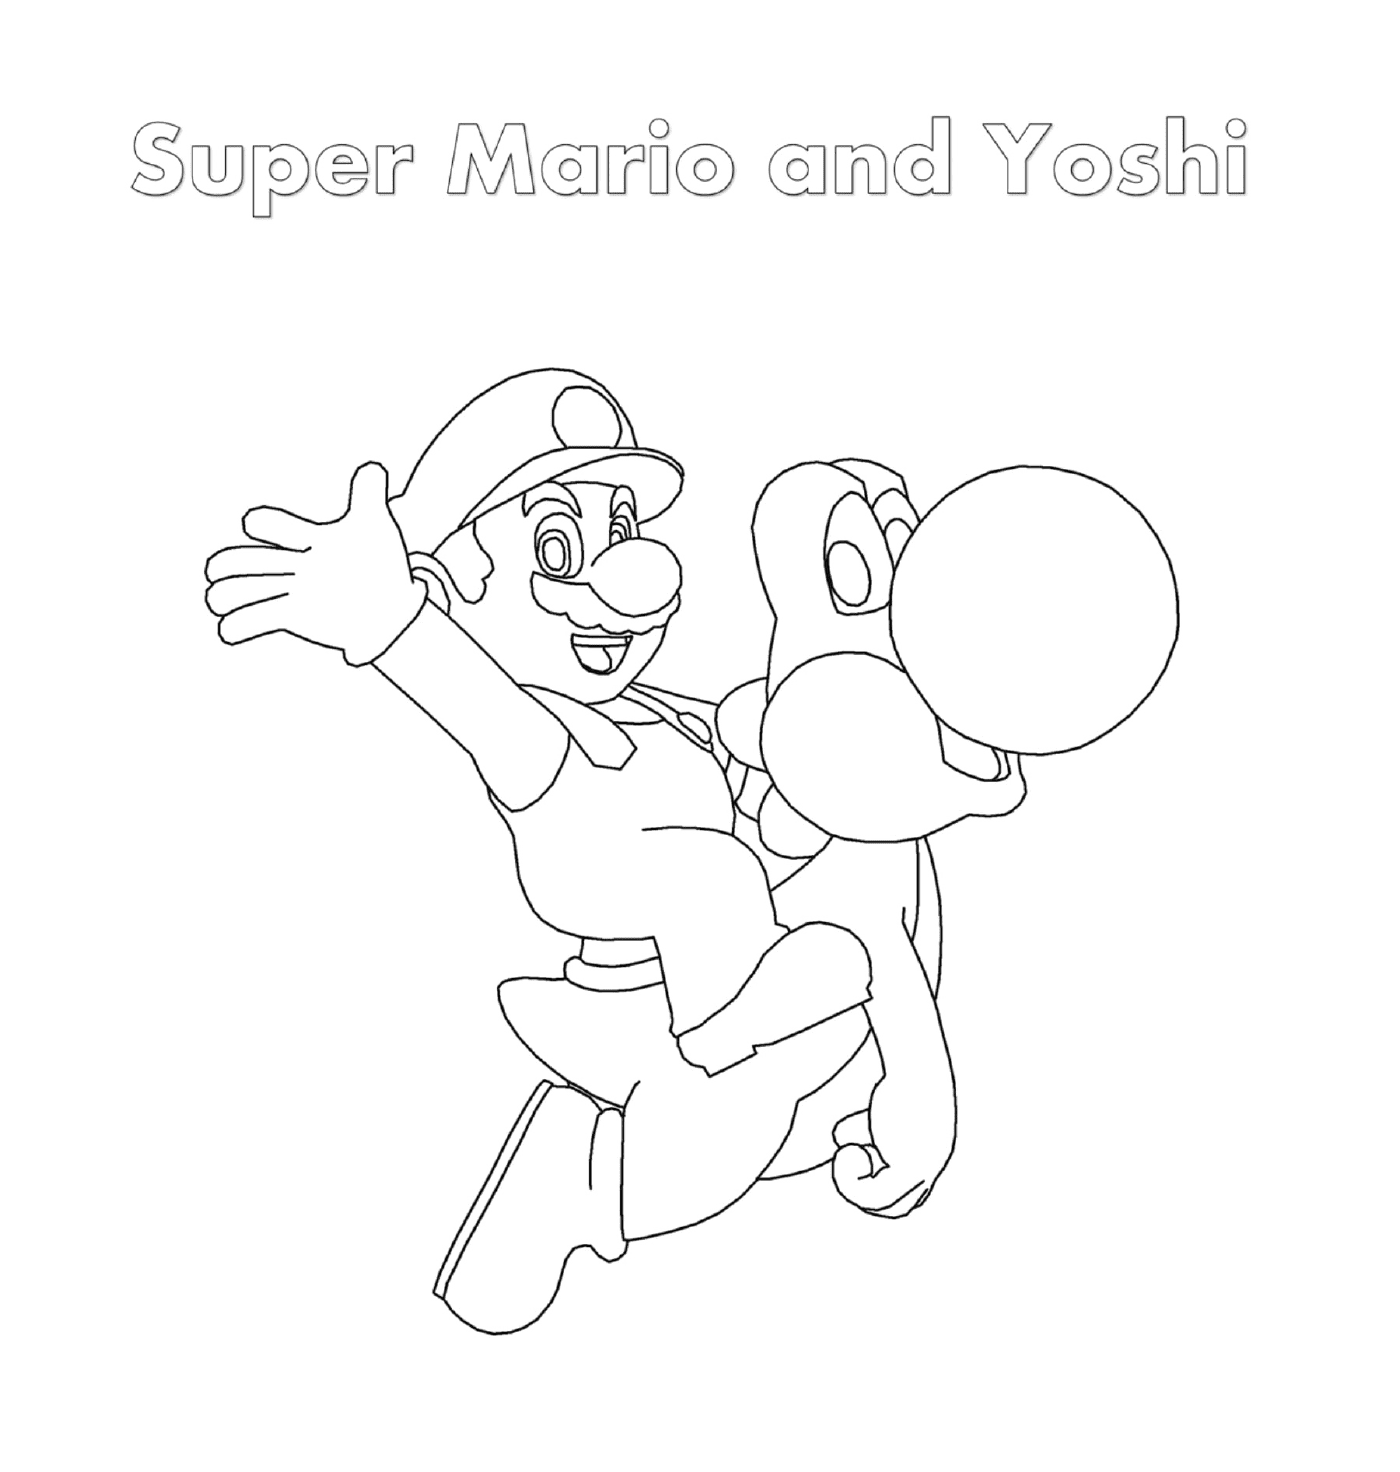 Super Mario and Yoshi